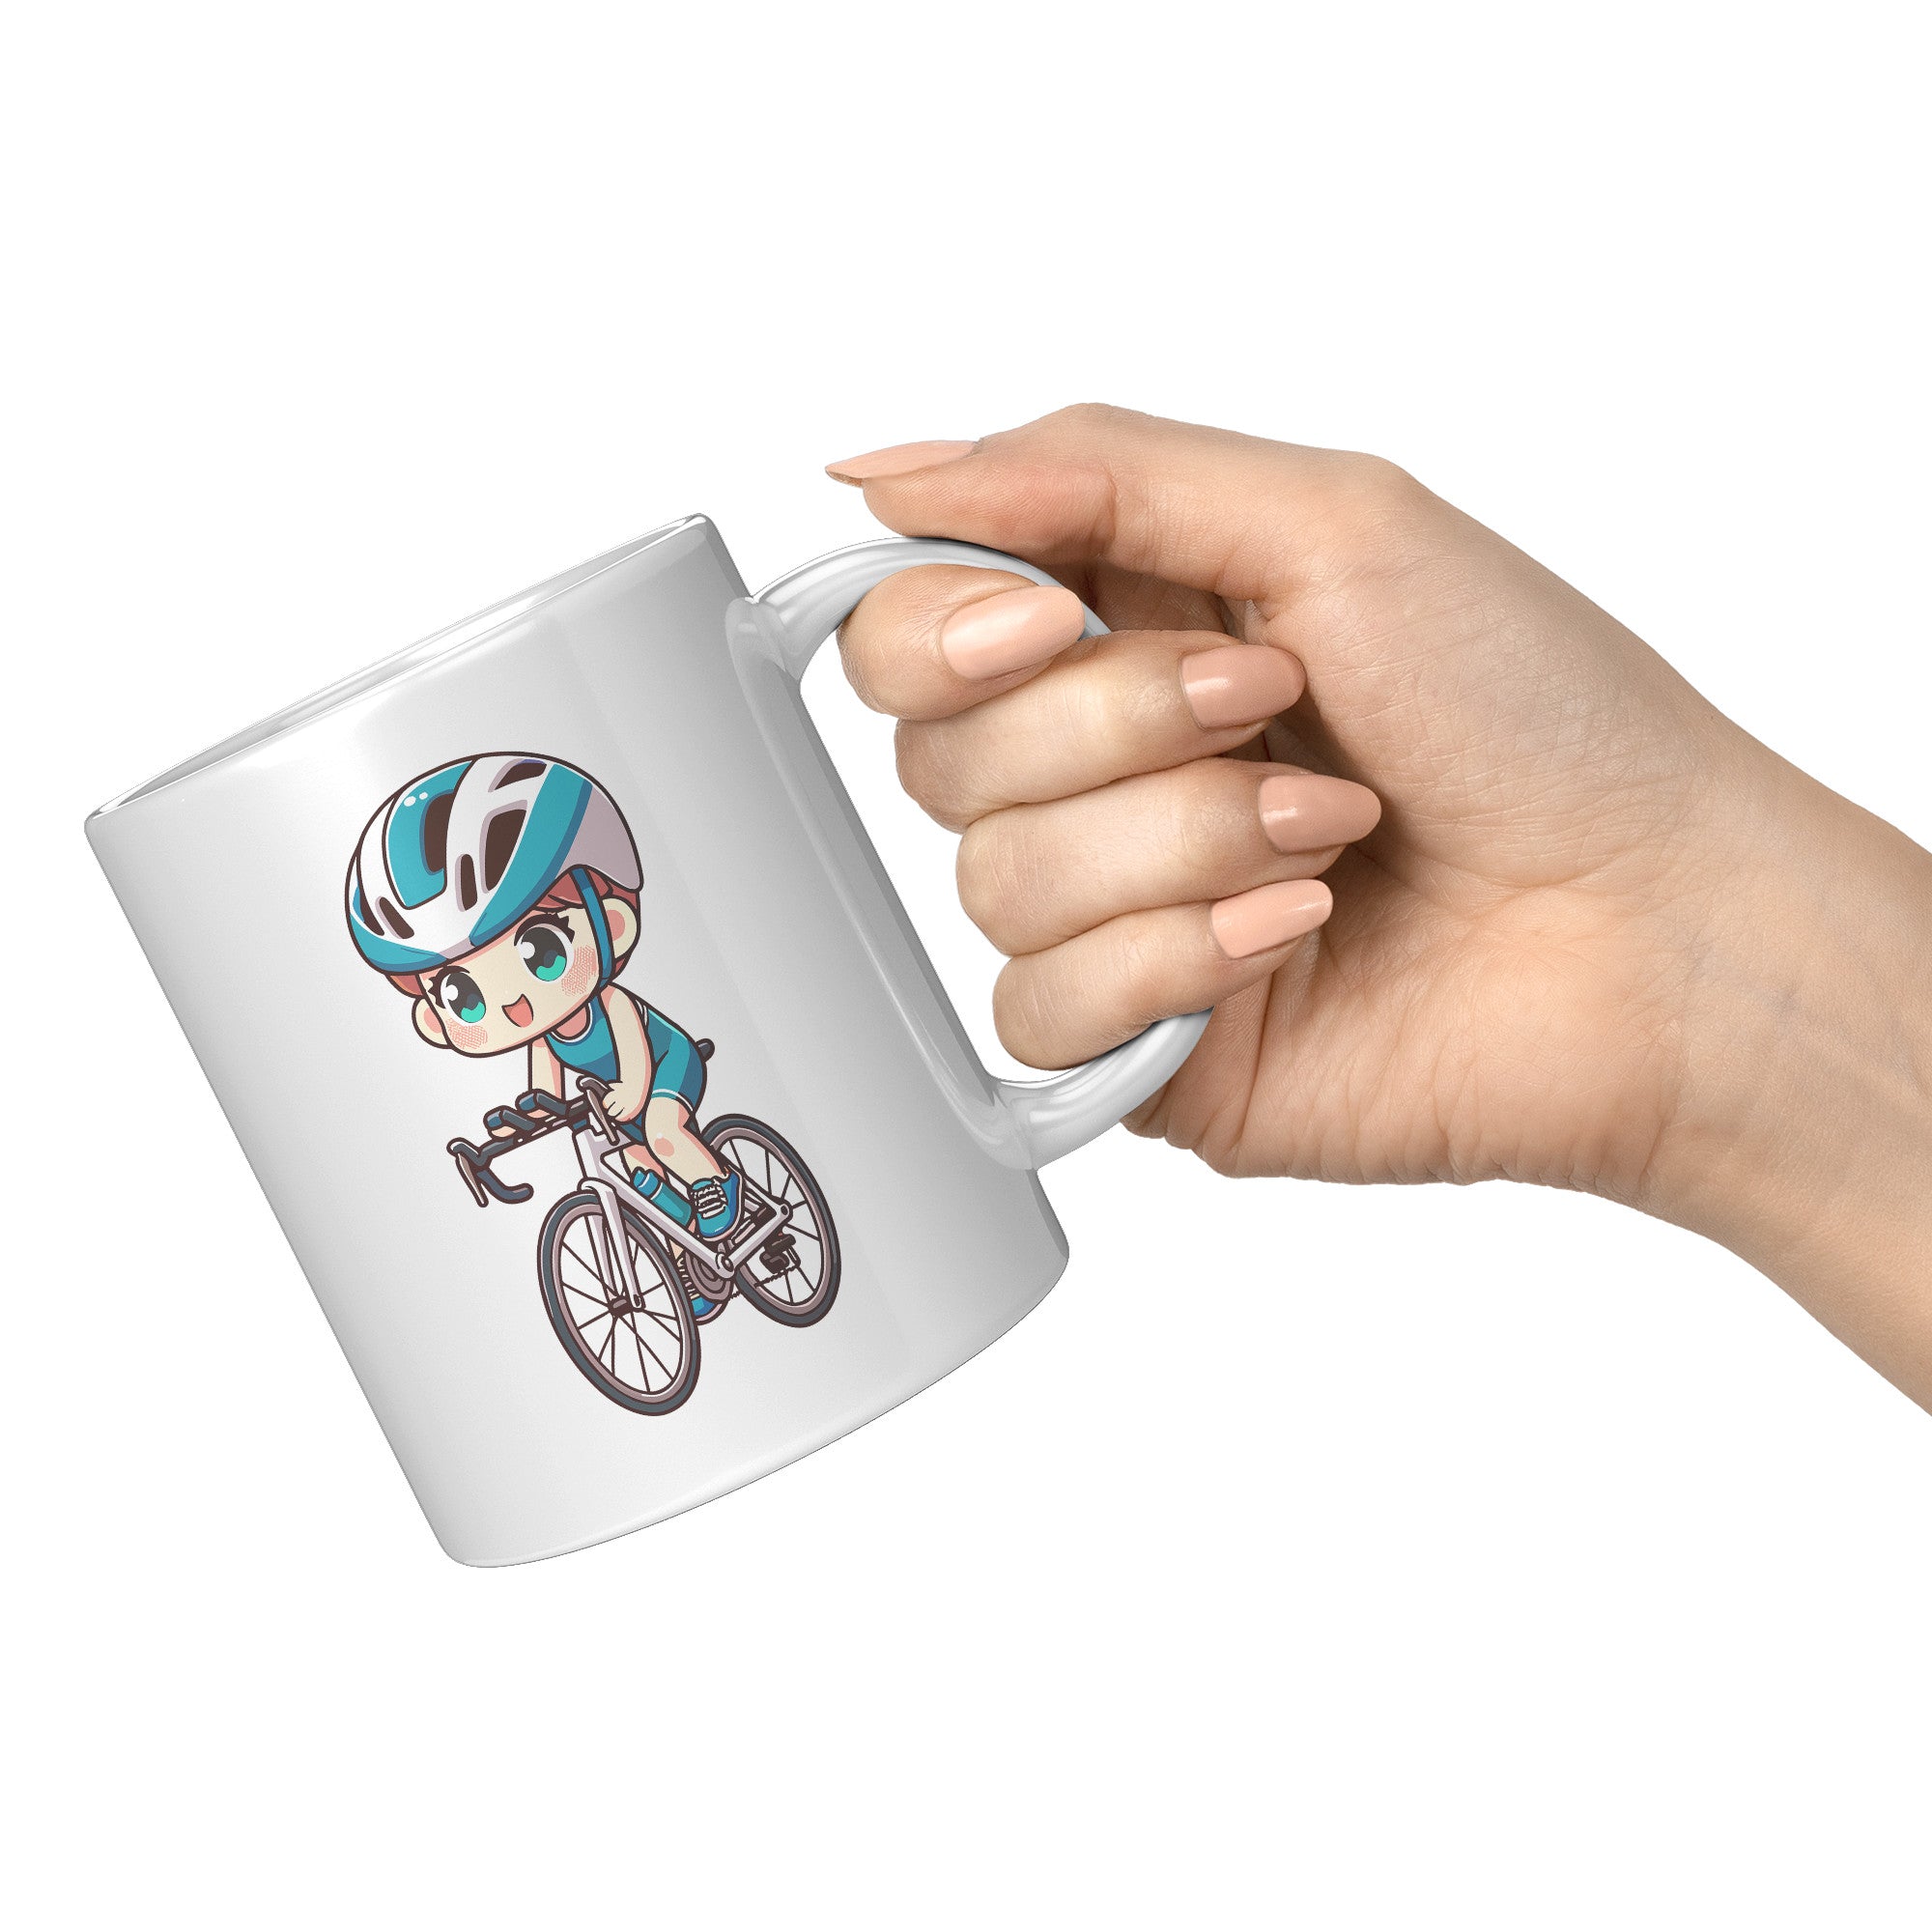 "Funko Pop Triathlon Athlete Coffee Mug - Multisport Morning Brew Cup - Ideal Gift for Triathletes - Swim, Bike, Run Inspired Mug" - A